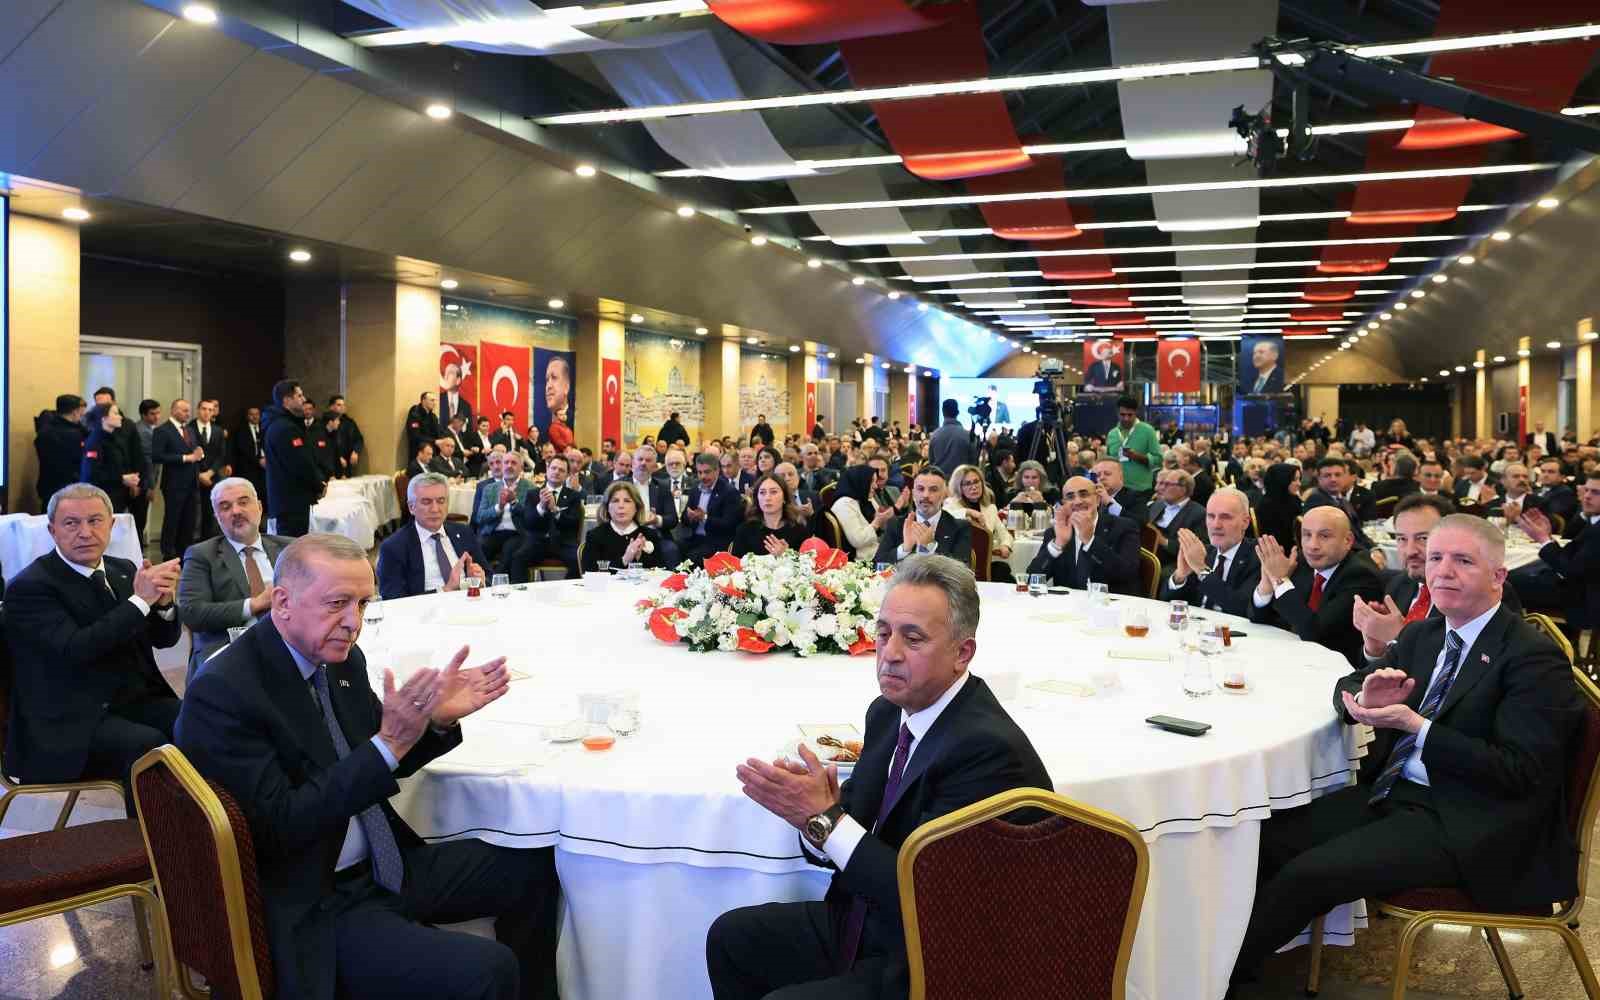 cumhurbaskani erdogan turkiye ekonomisinin lokomotifi olan istanbulu belediyecilik hizmetlerinde tekrar zirveye tasiyacagiz 1 erqFLTE3